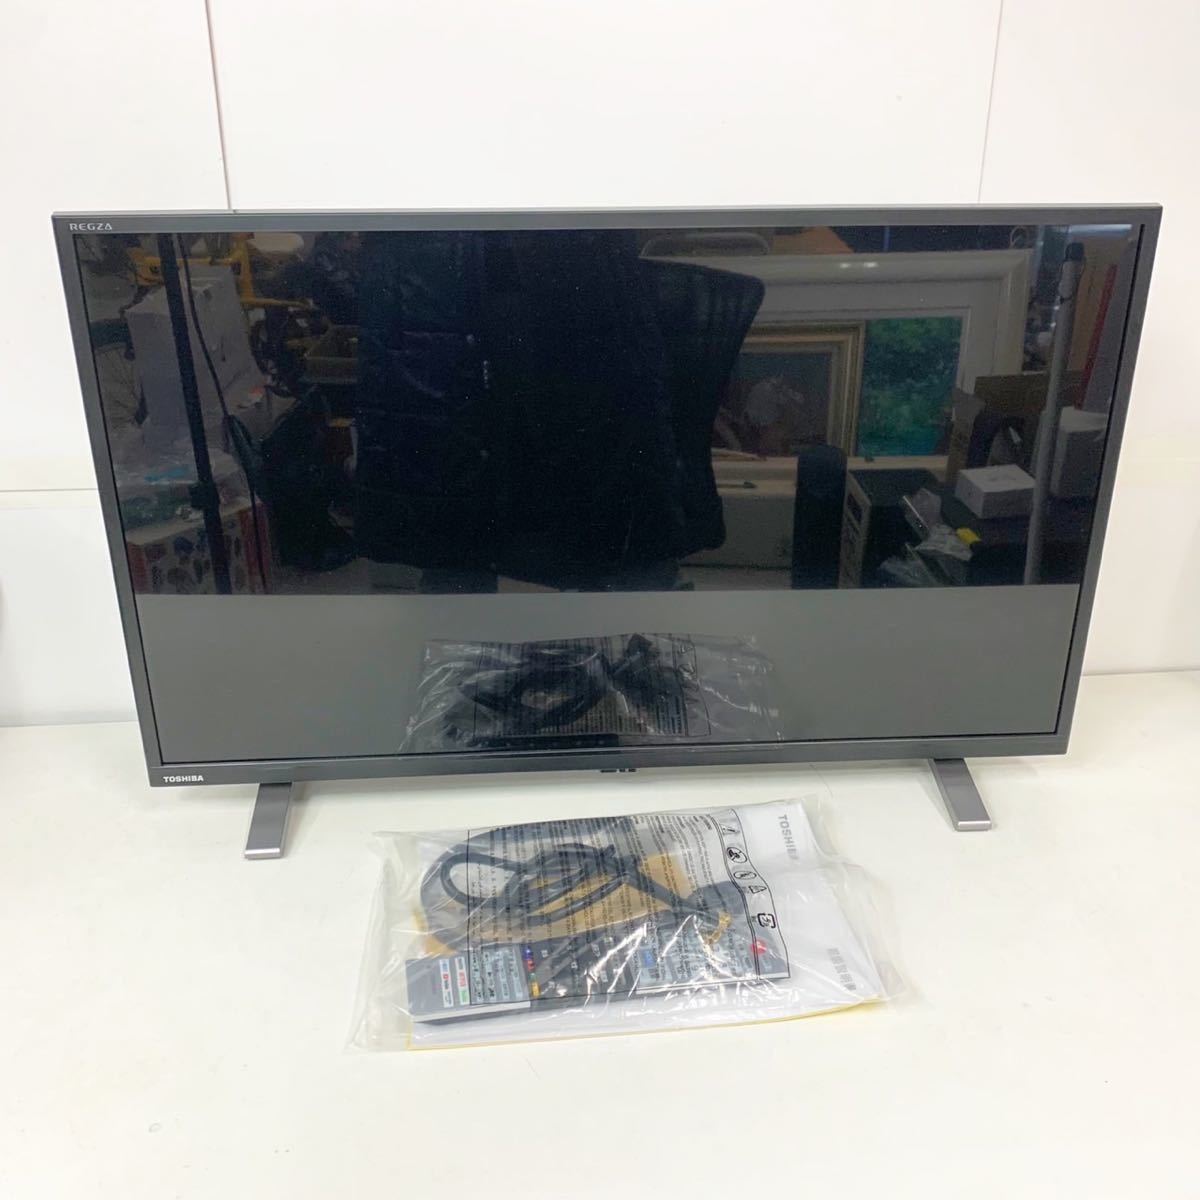 値下げ不可 2021年製 TOSHIBA レグザ 32V34 32V型 HD液晶 テレビ/映像 